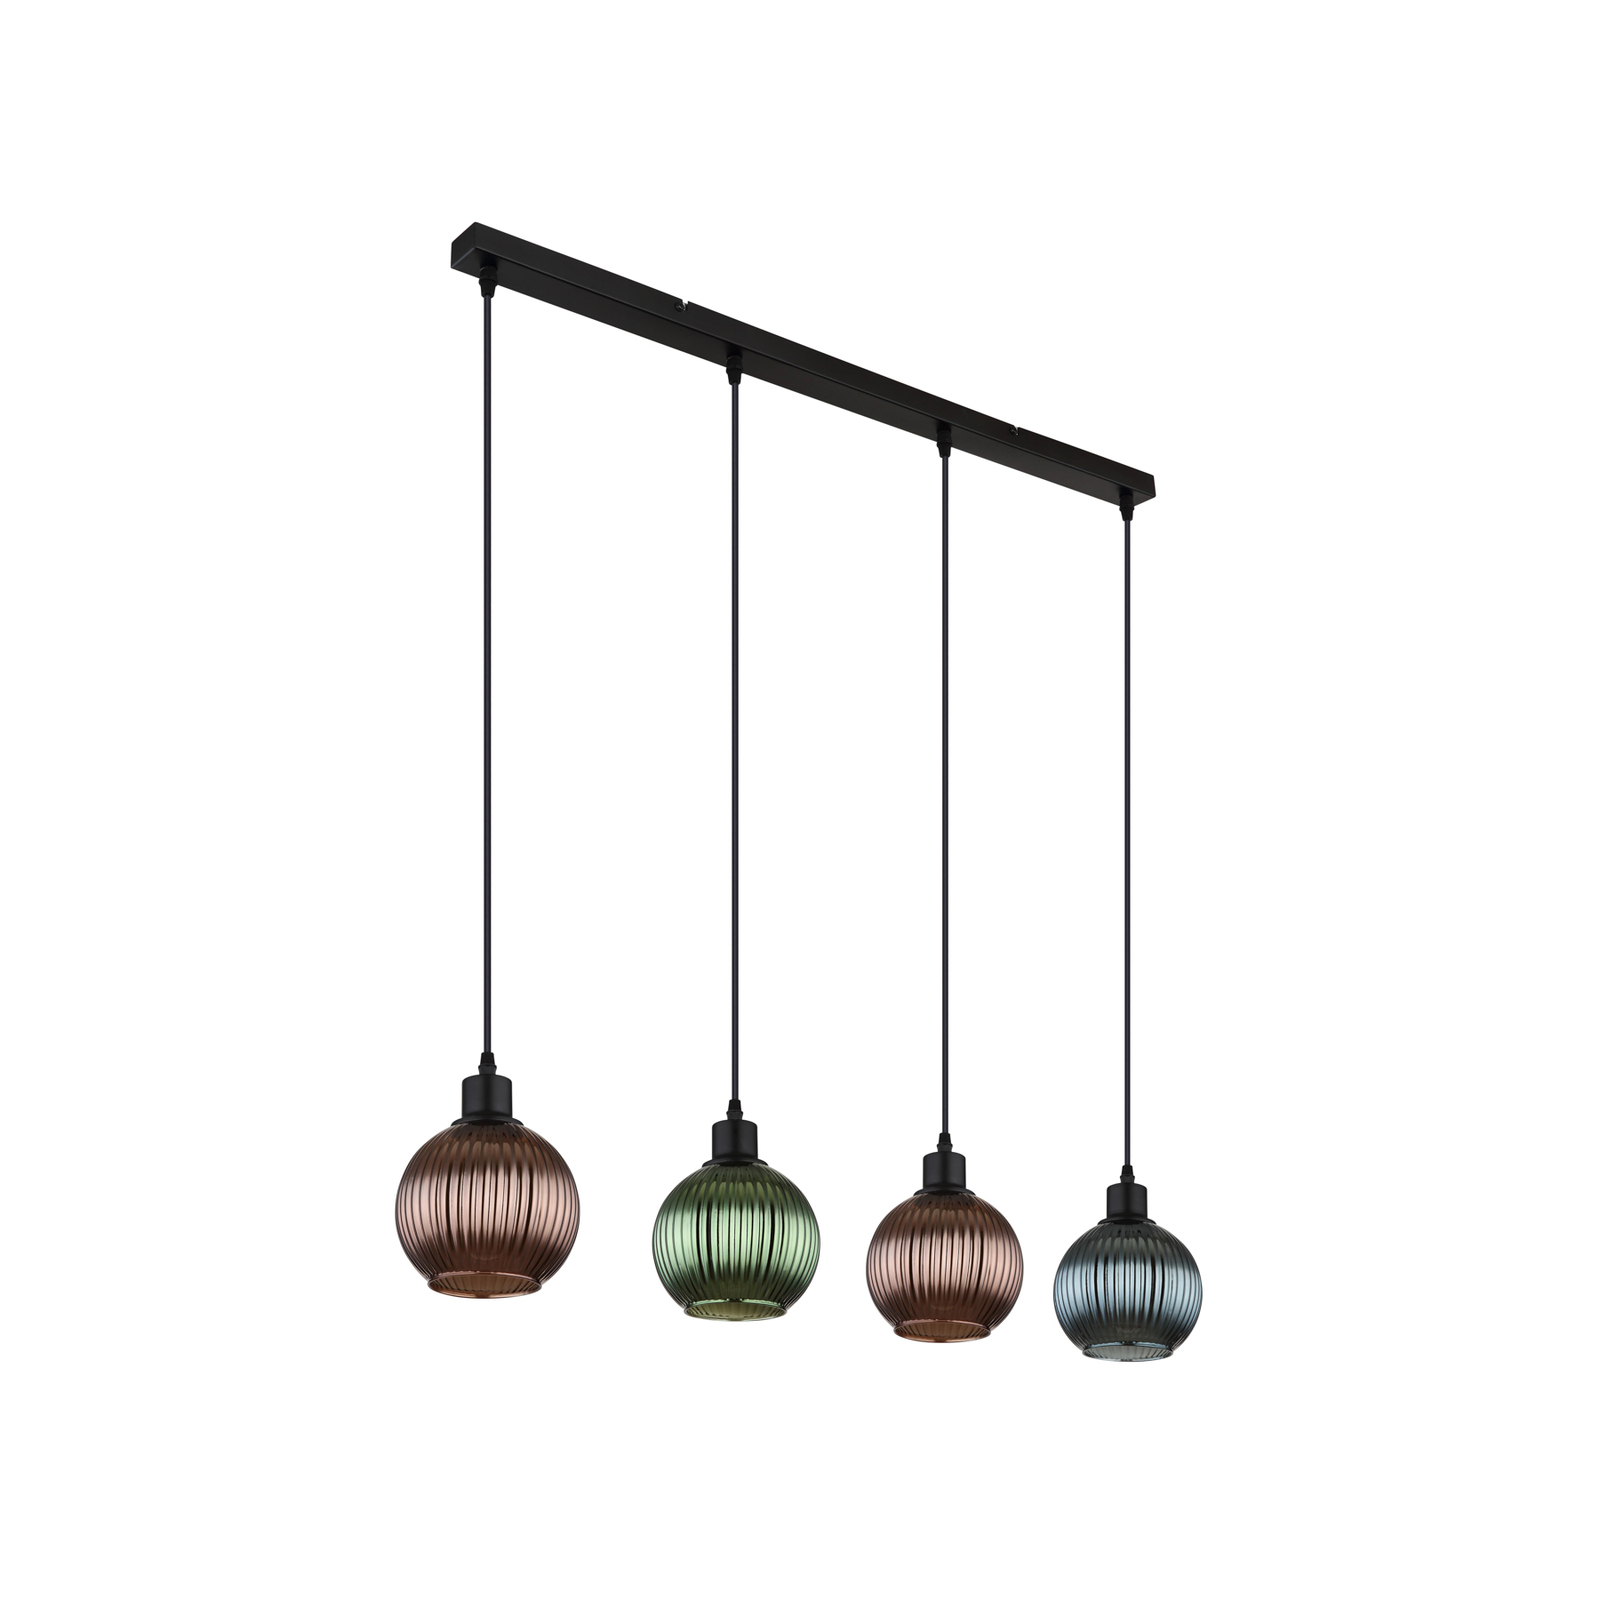 Lampa wisząca Zumba, zielony/brązowy/petrol, 90 cm, 4 światła, szkło